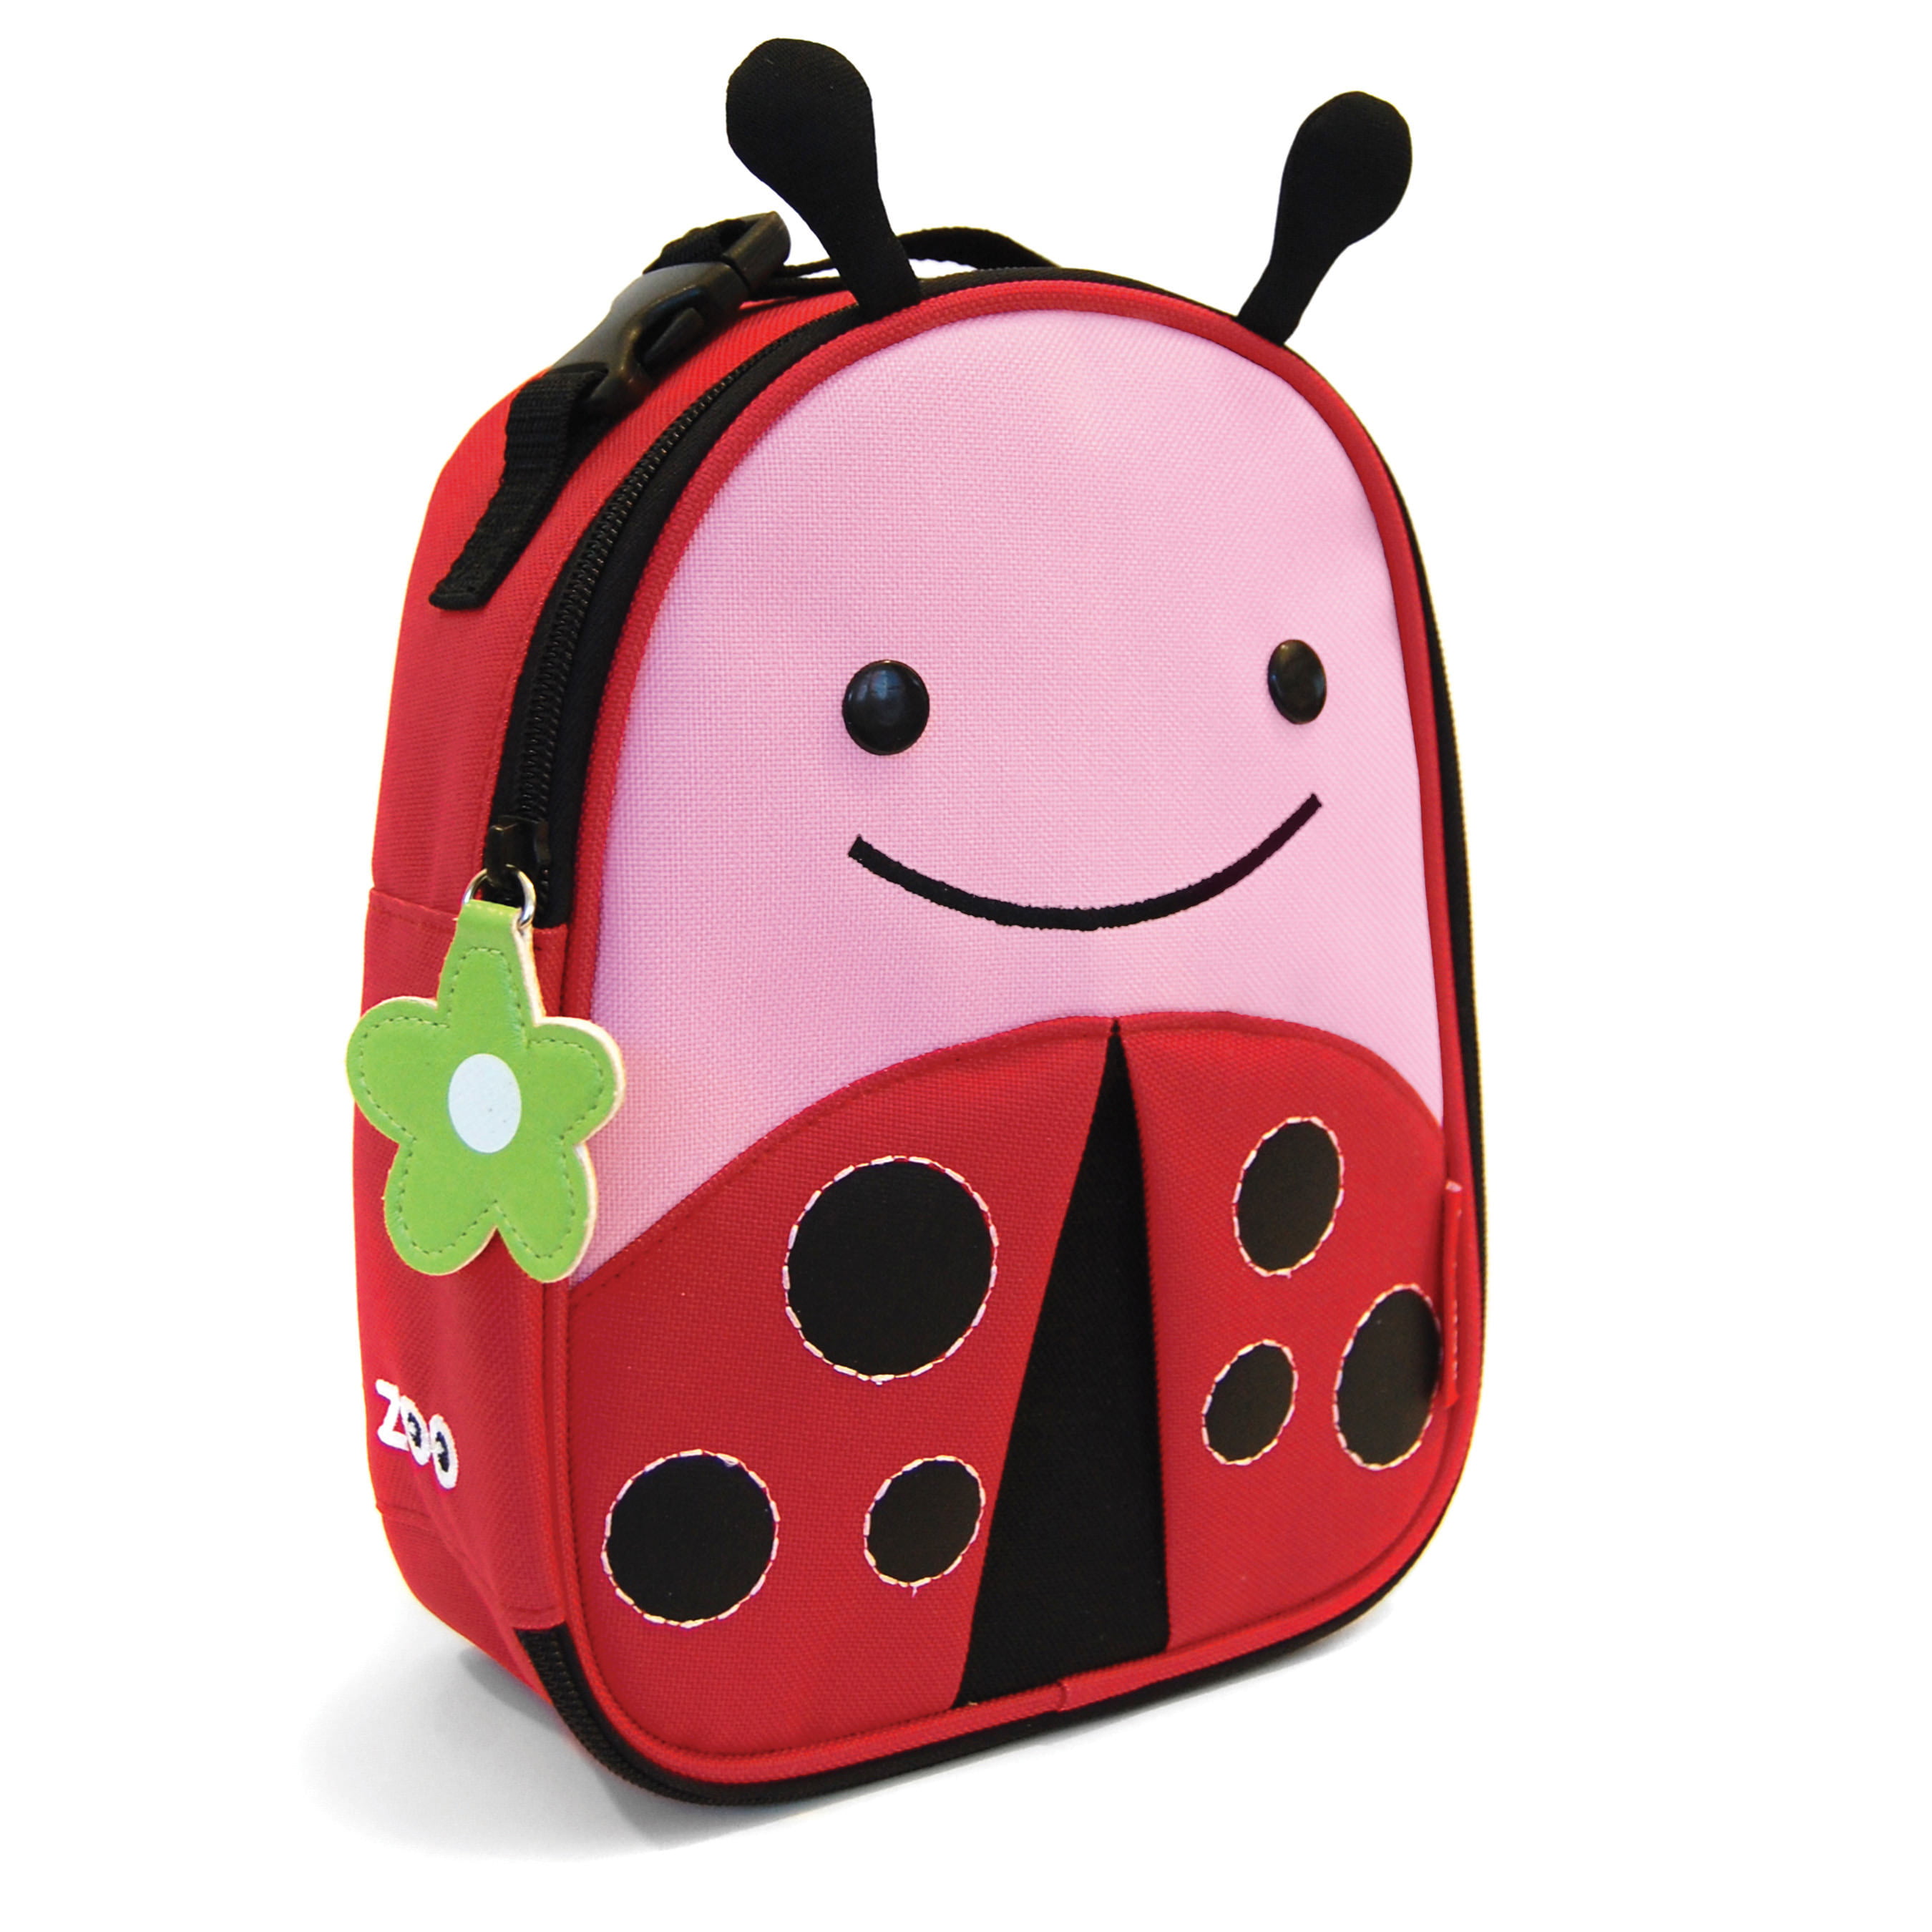 skip hop ladybug lunch bag